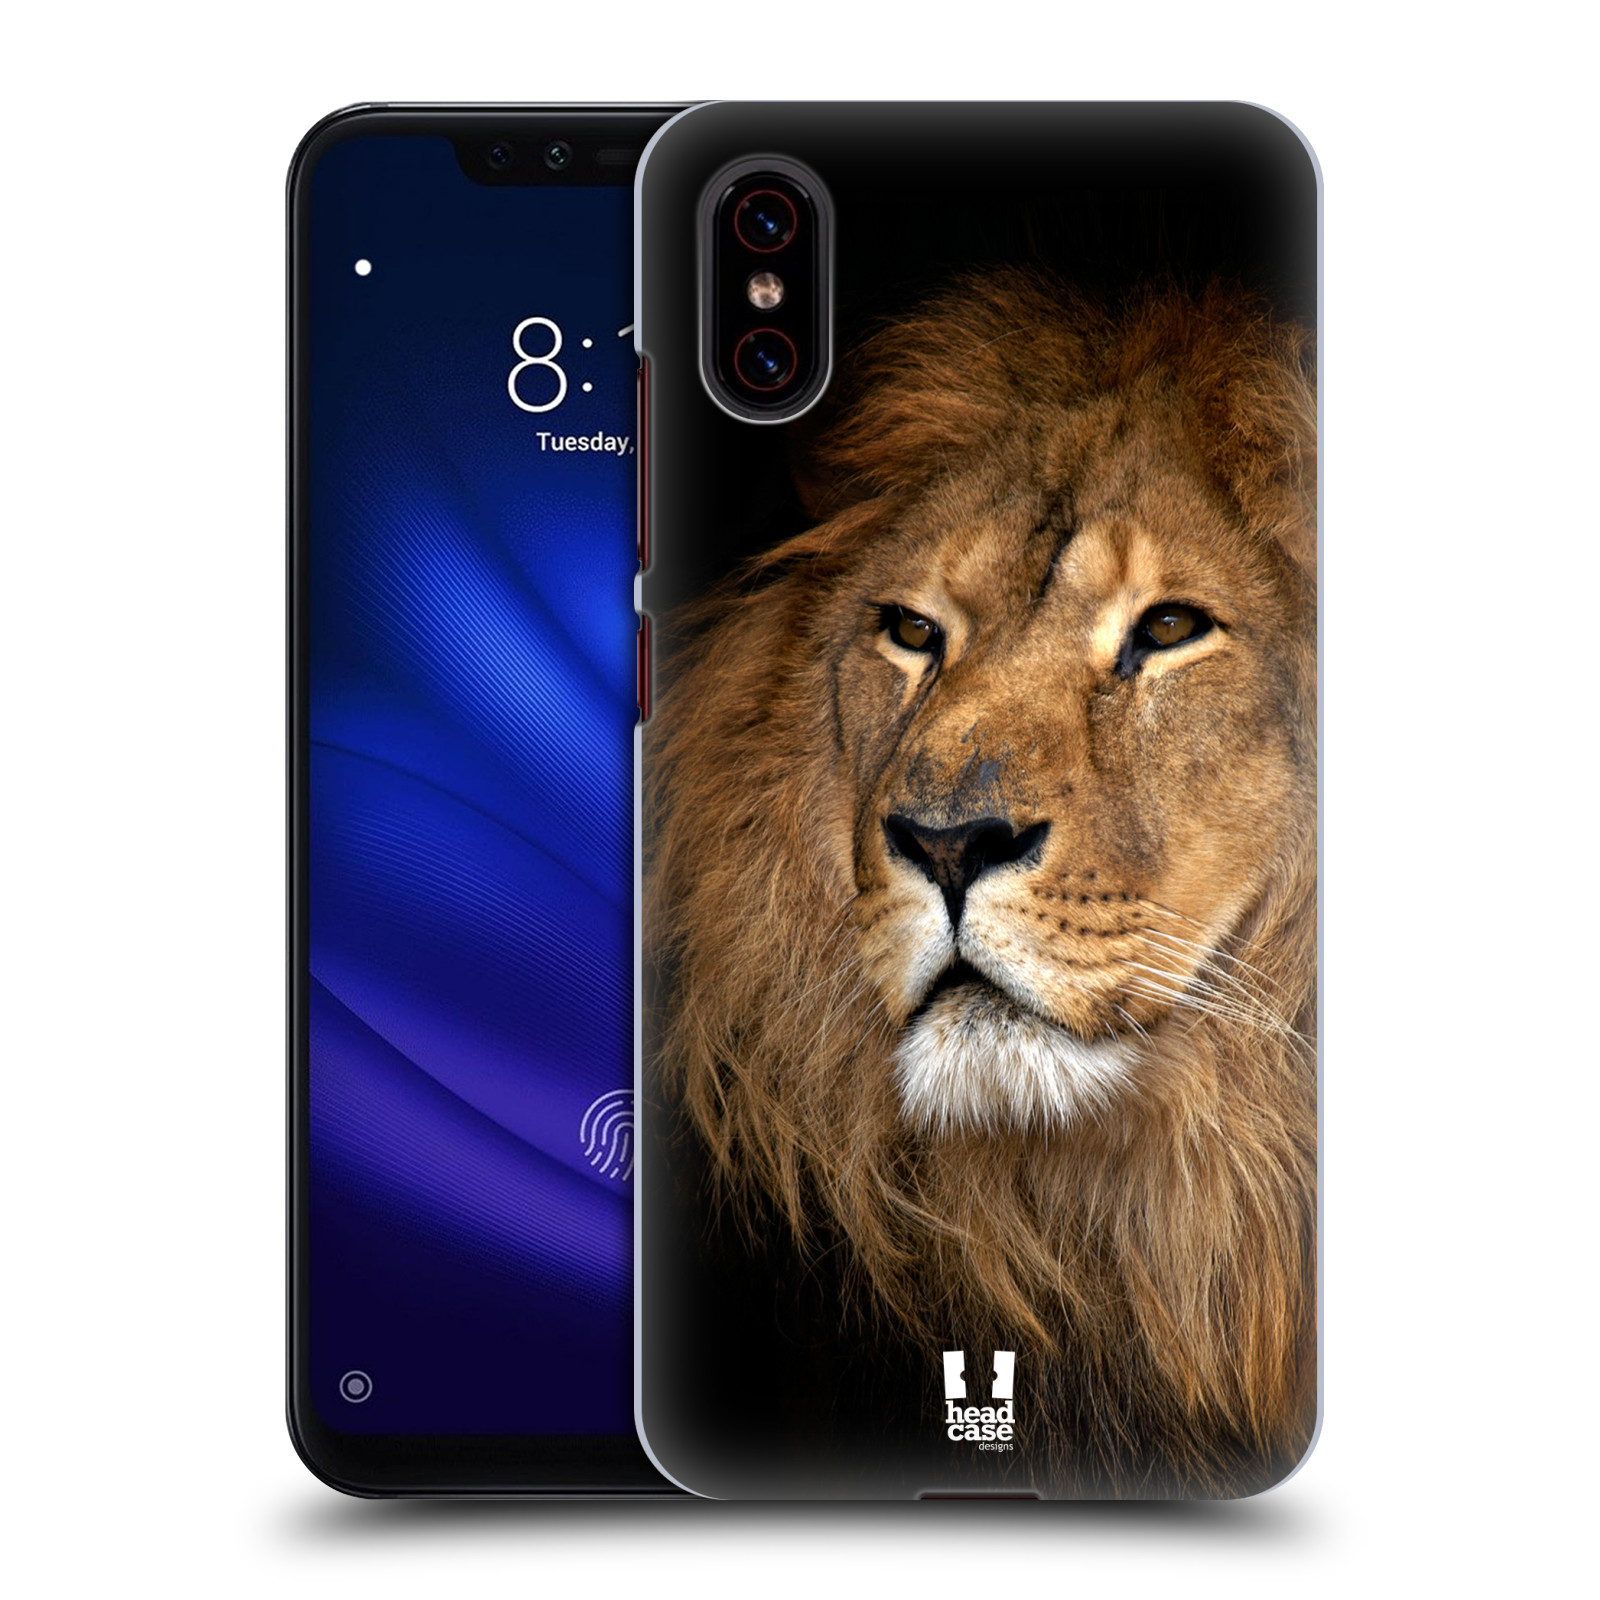 Zadní obal pro mobil Xiaomi Mi 8 PRO - HEAD CASE - Svět zvířat král zvířat Lev